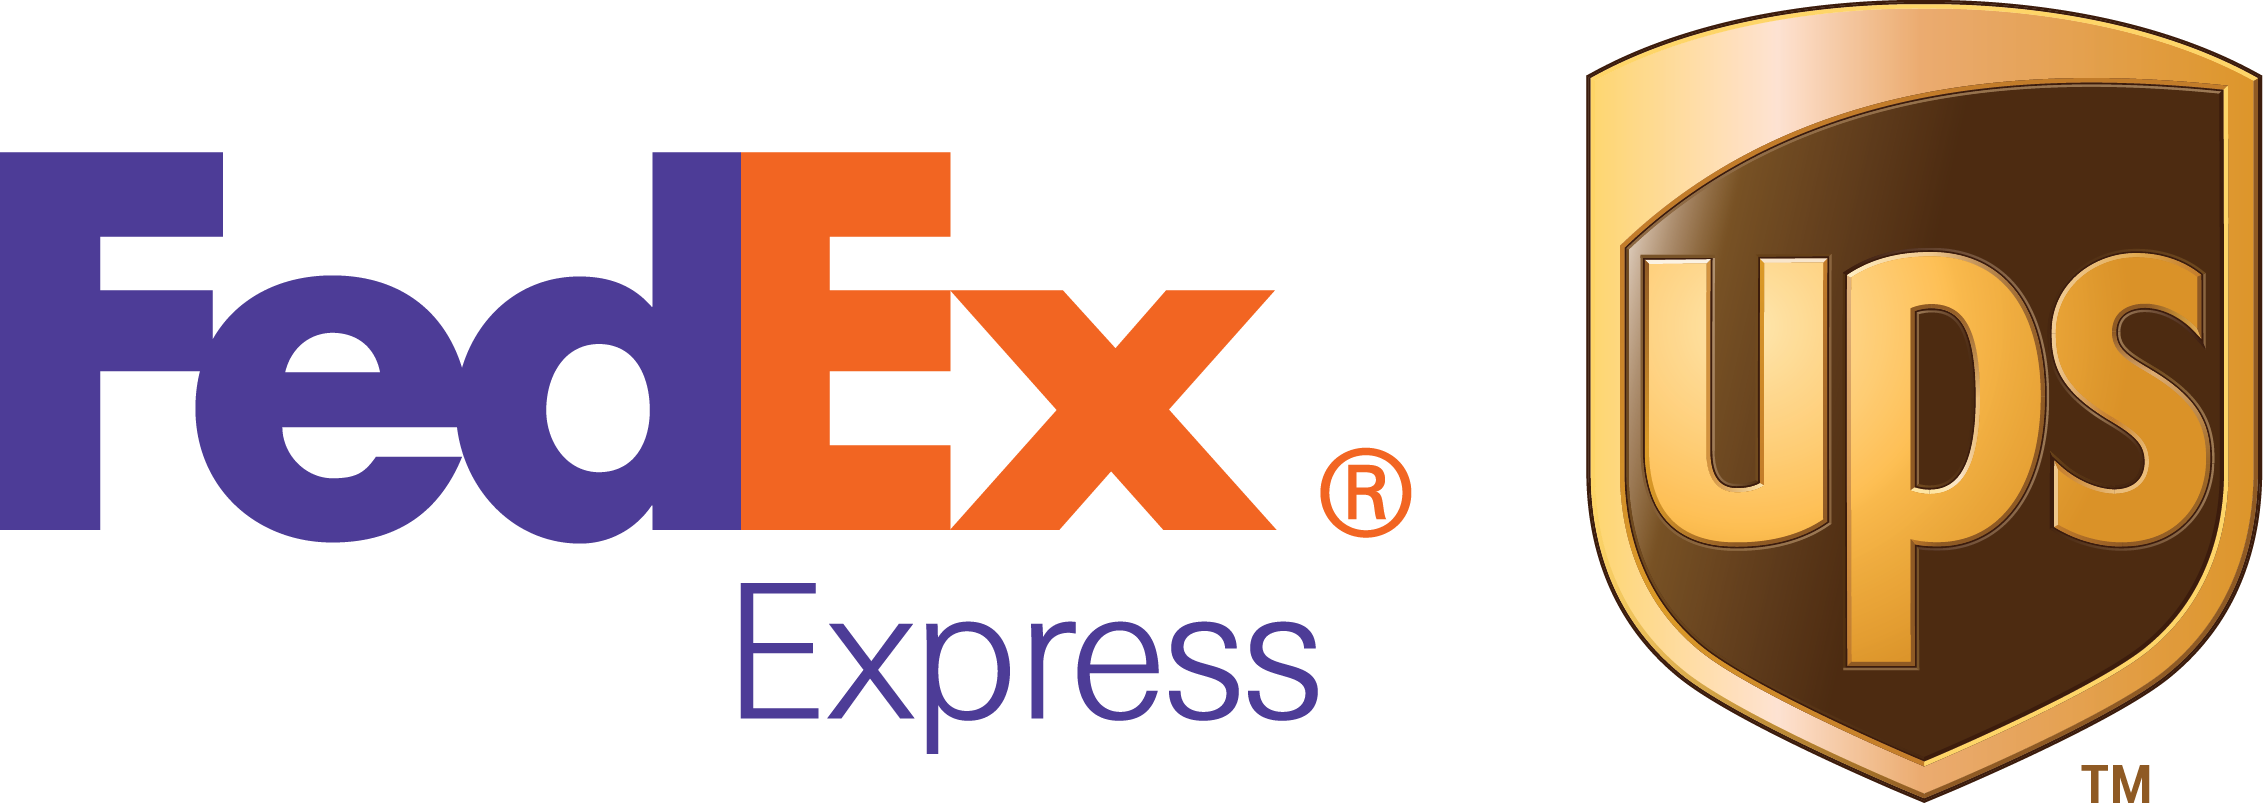 FEDEX Express logo